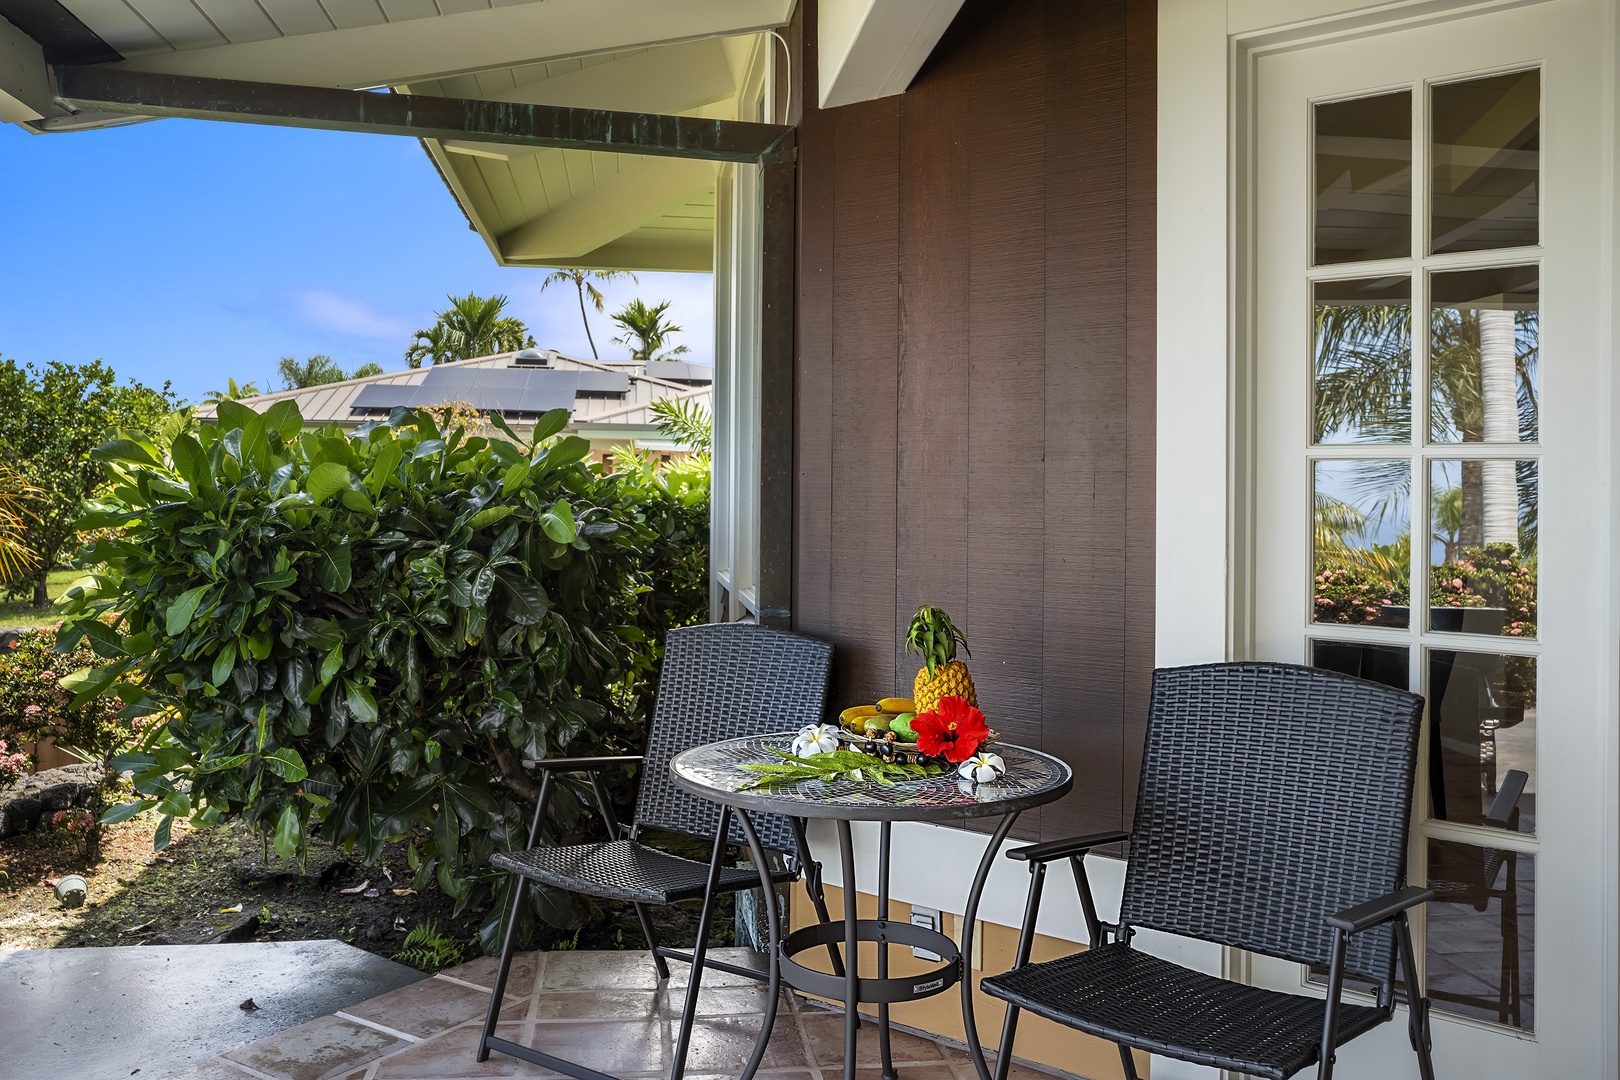 Kailua Kona Vacation Rentals, Pineapple House - Great place for Kona Coffee